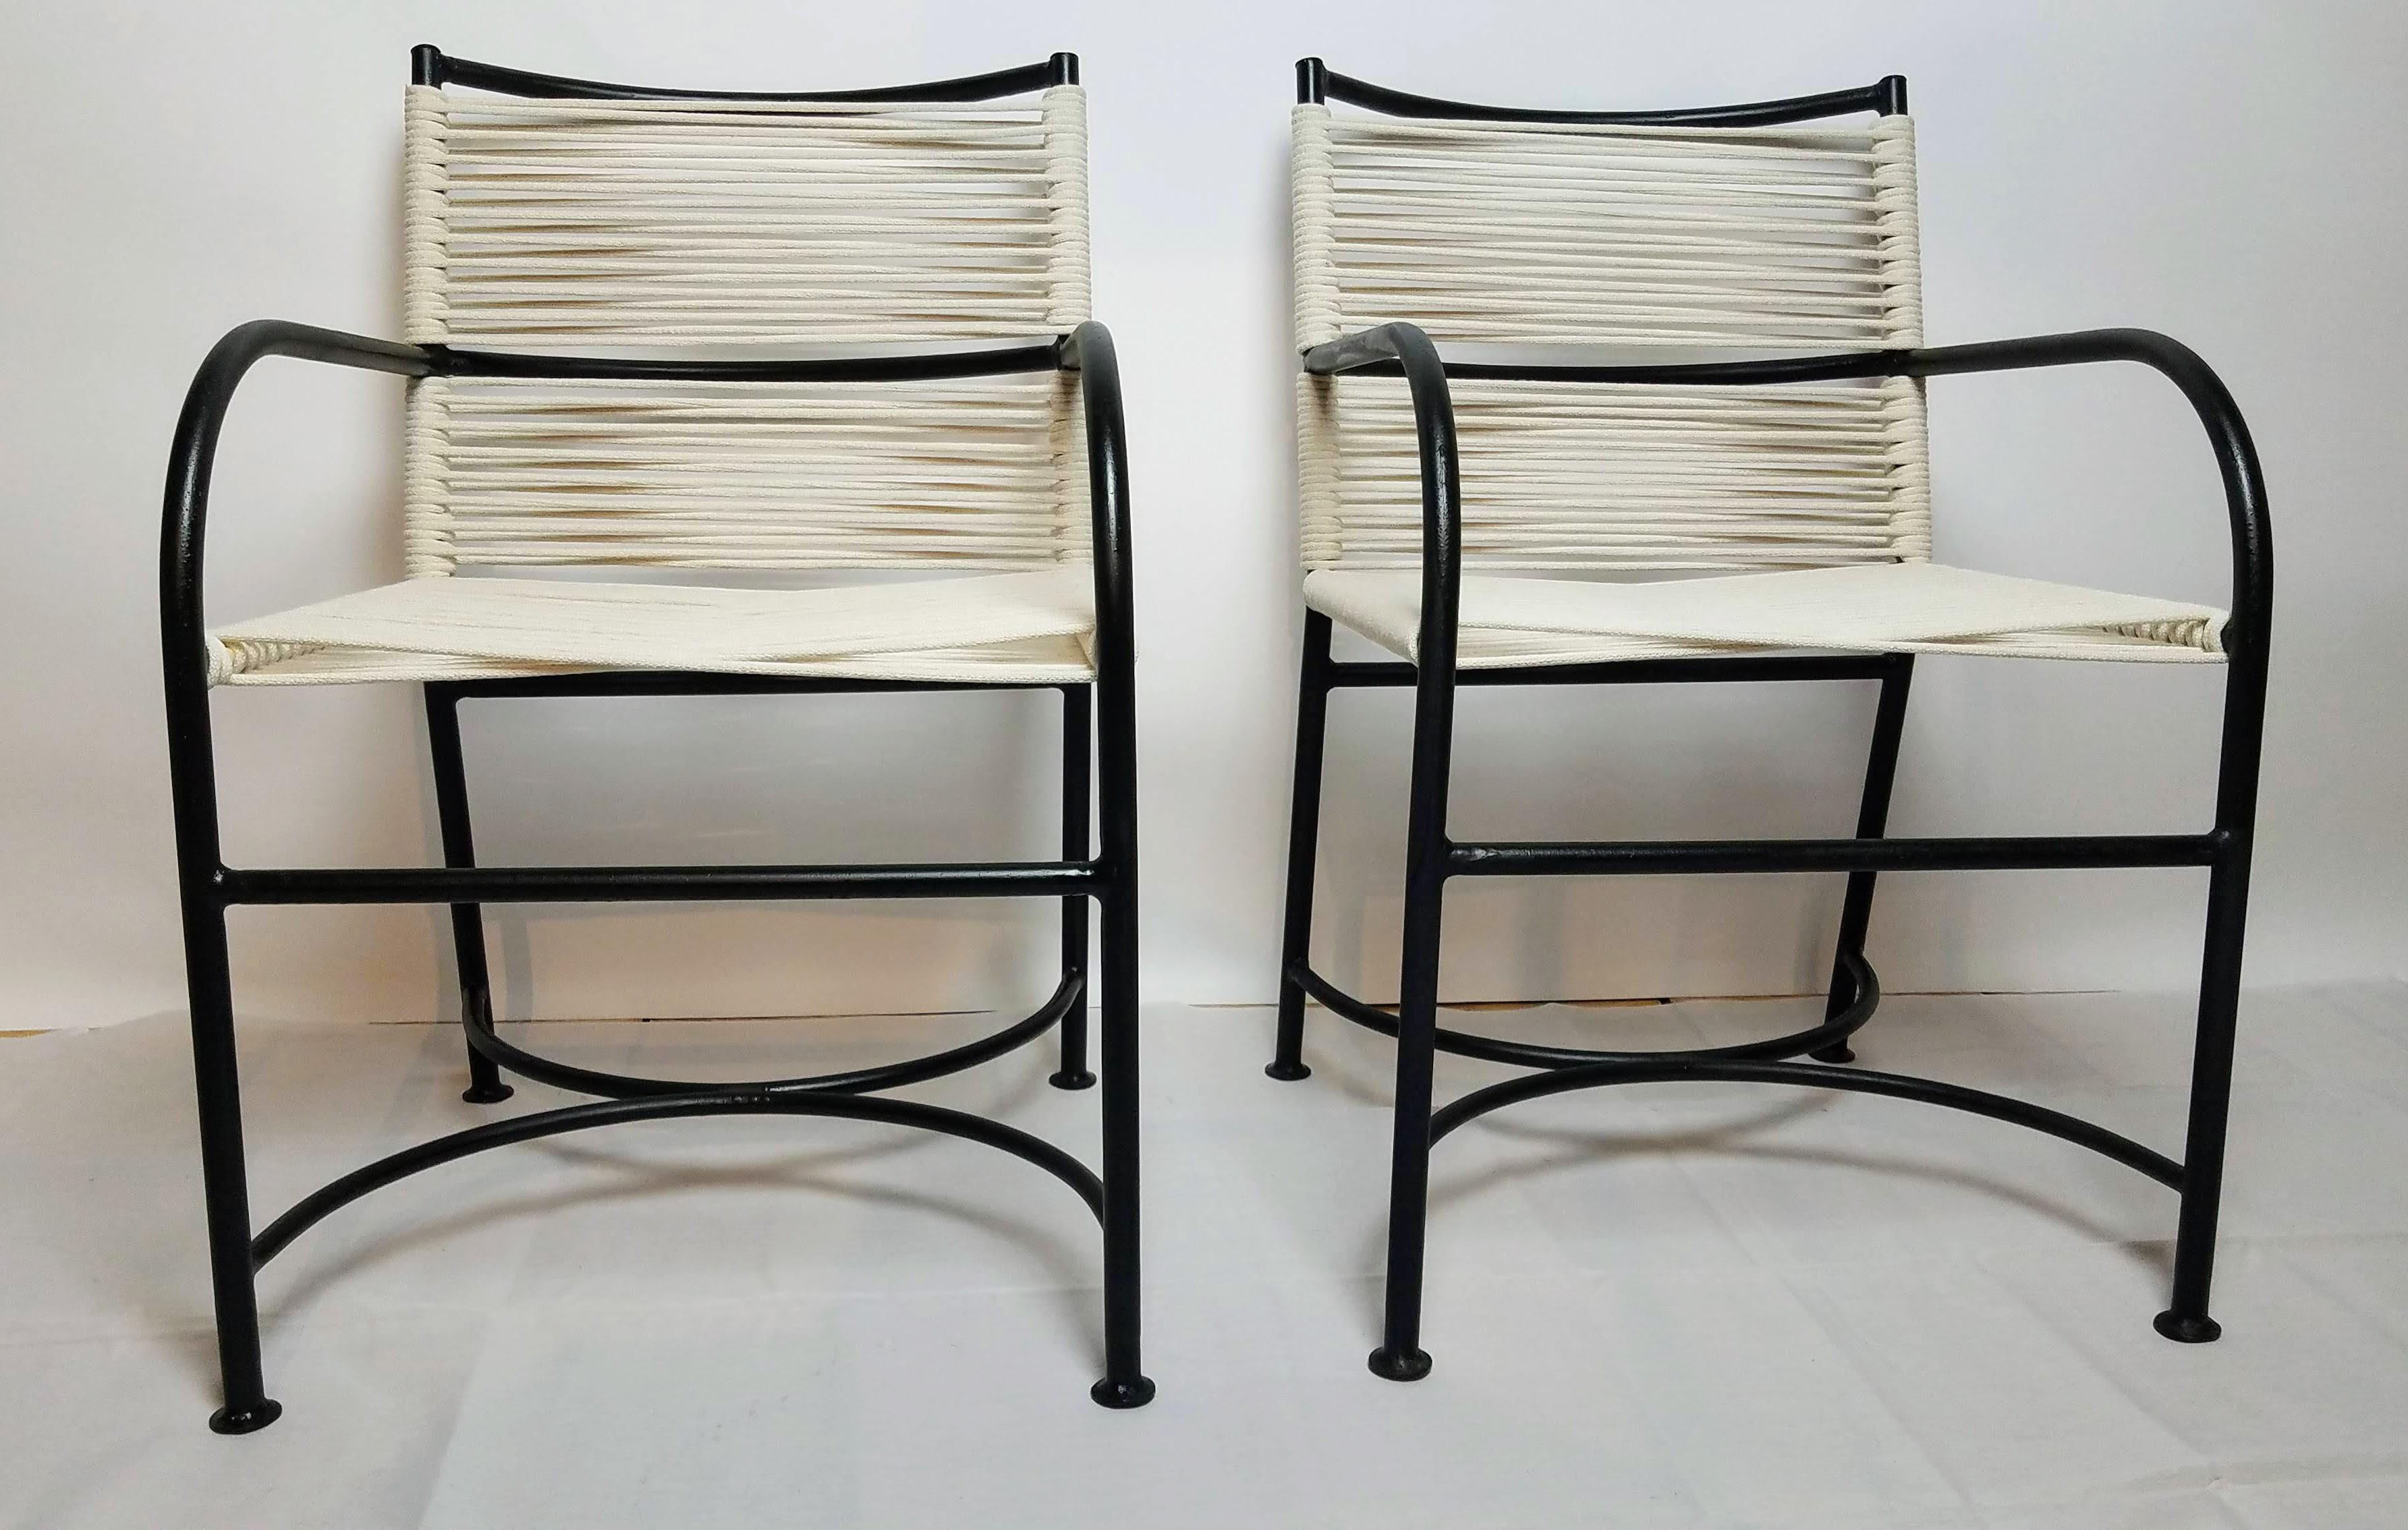 Paire de fauteuils en tube d'acier Robert Lewis, datant d'environ 1940, fabriqués à la main à Santa Barbara, CA. . 
Chaises d'extérieur classiques.
Les chaises sont en très bon état.